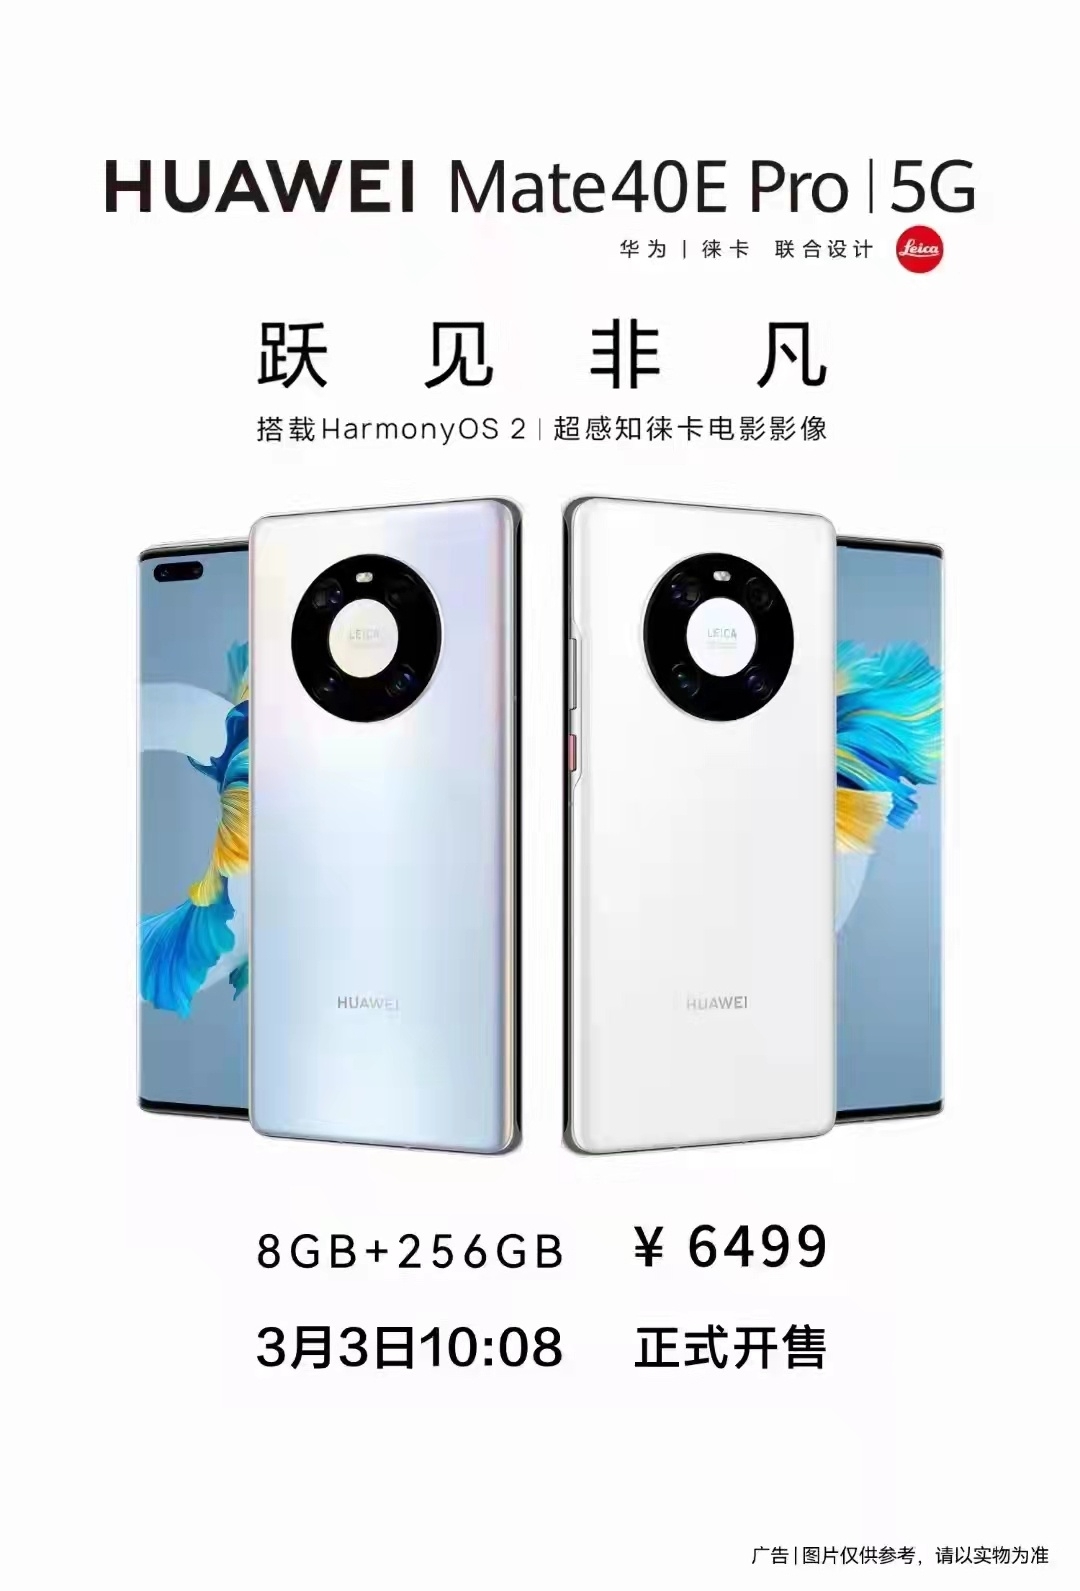 Huawei Mate 40E Pro 5G HarmonyOS